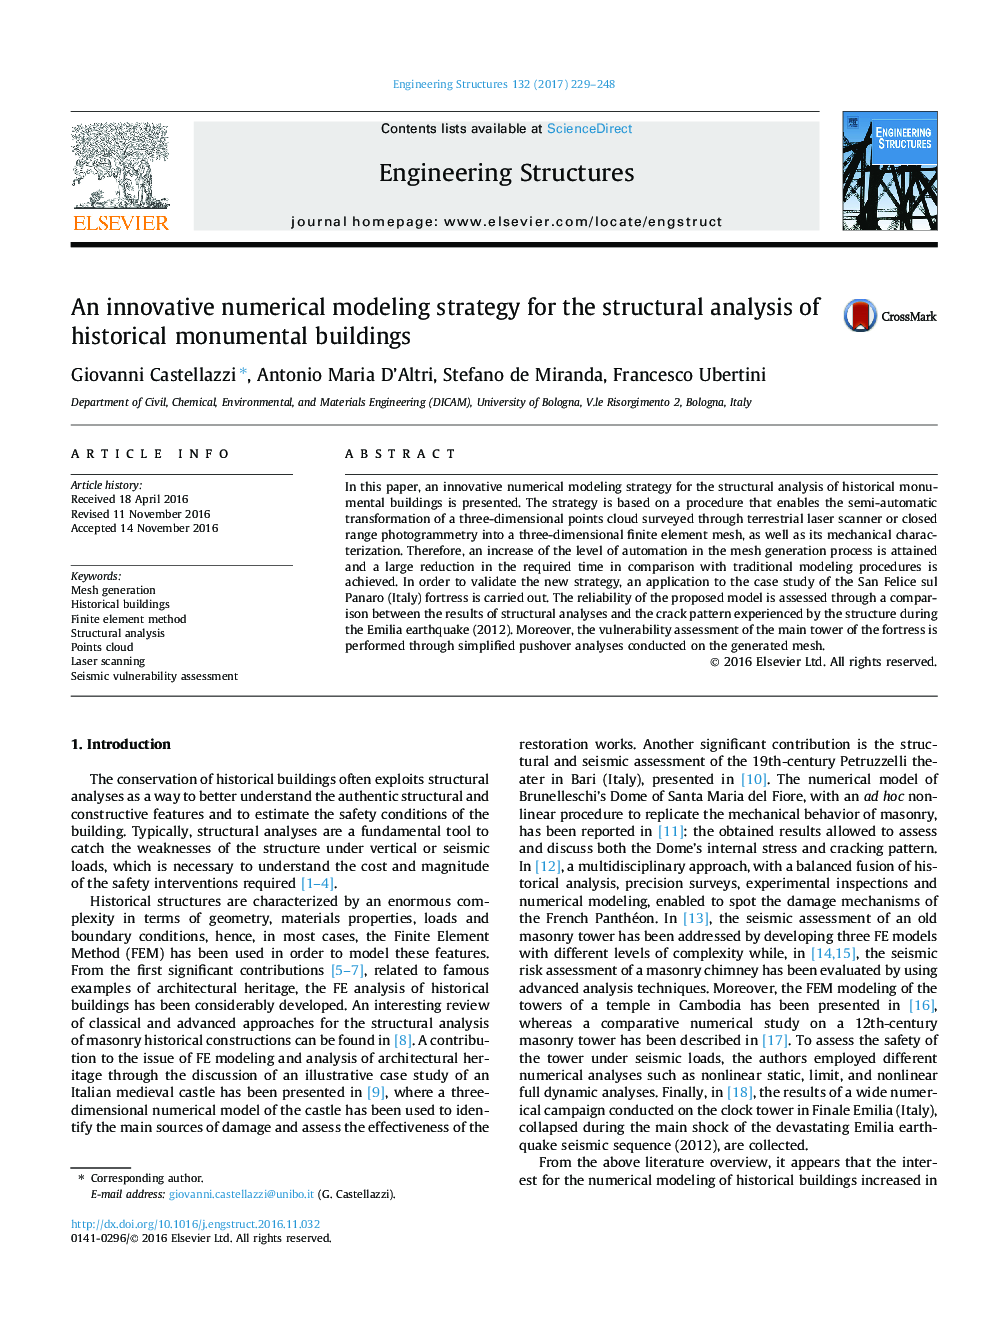 استراتژی مدل سازی عددی نوین برای تحلیل ساختاری ساختمان های تاریخی 